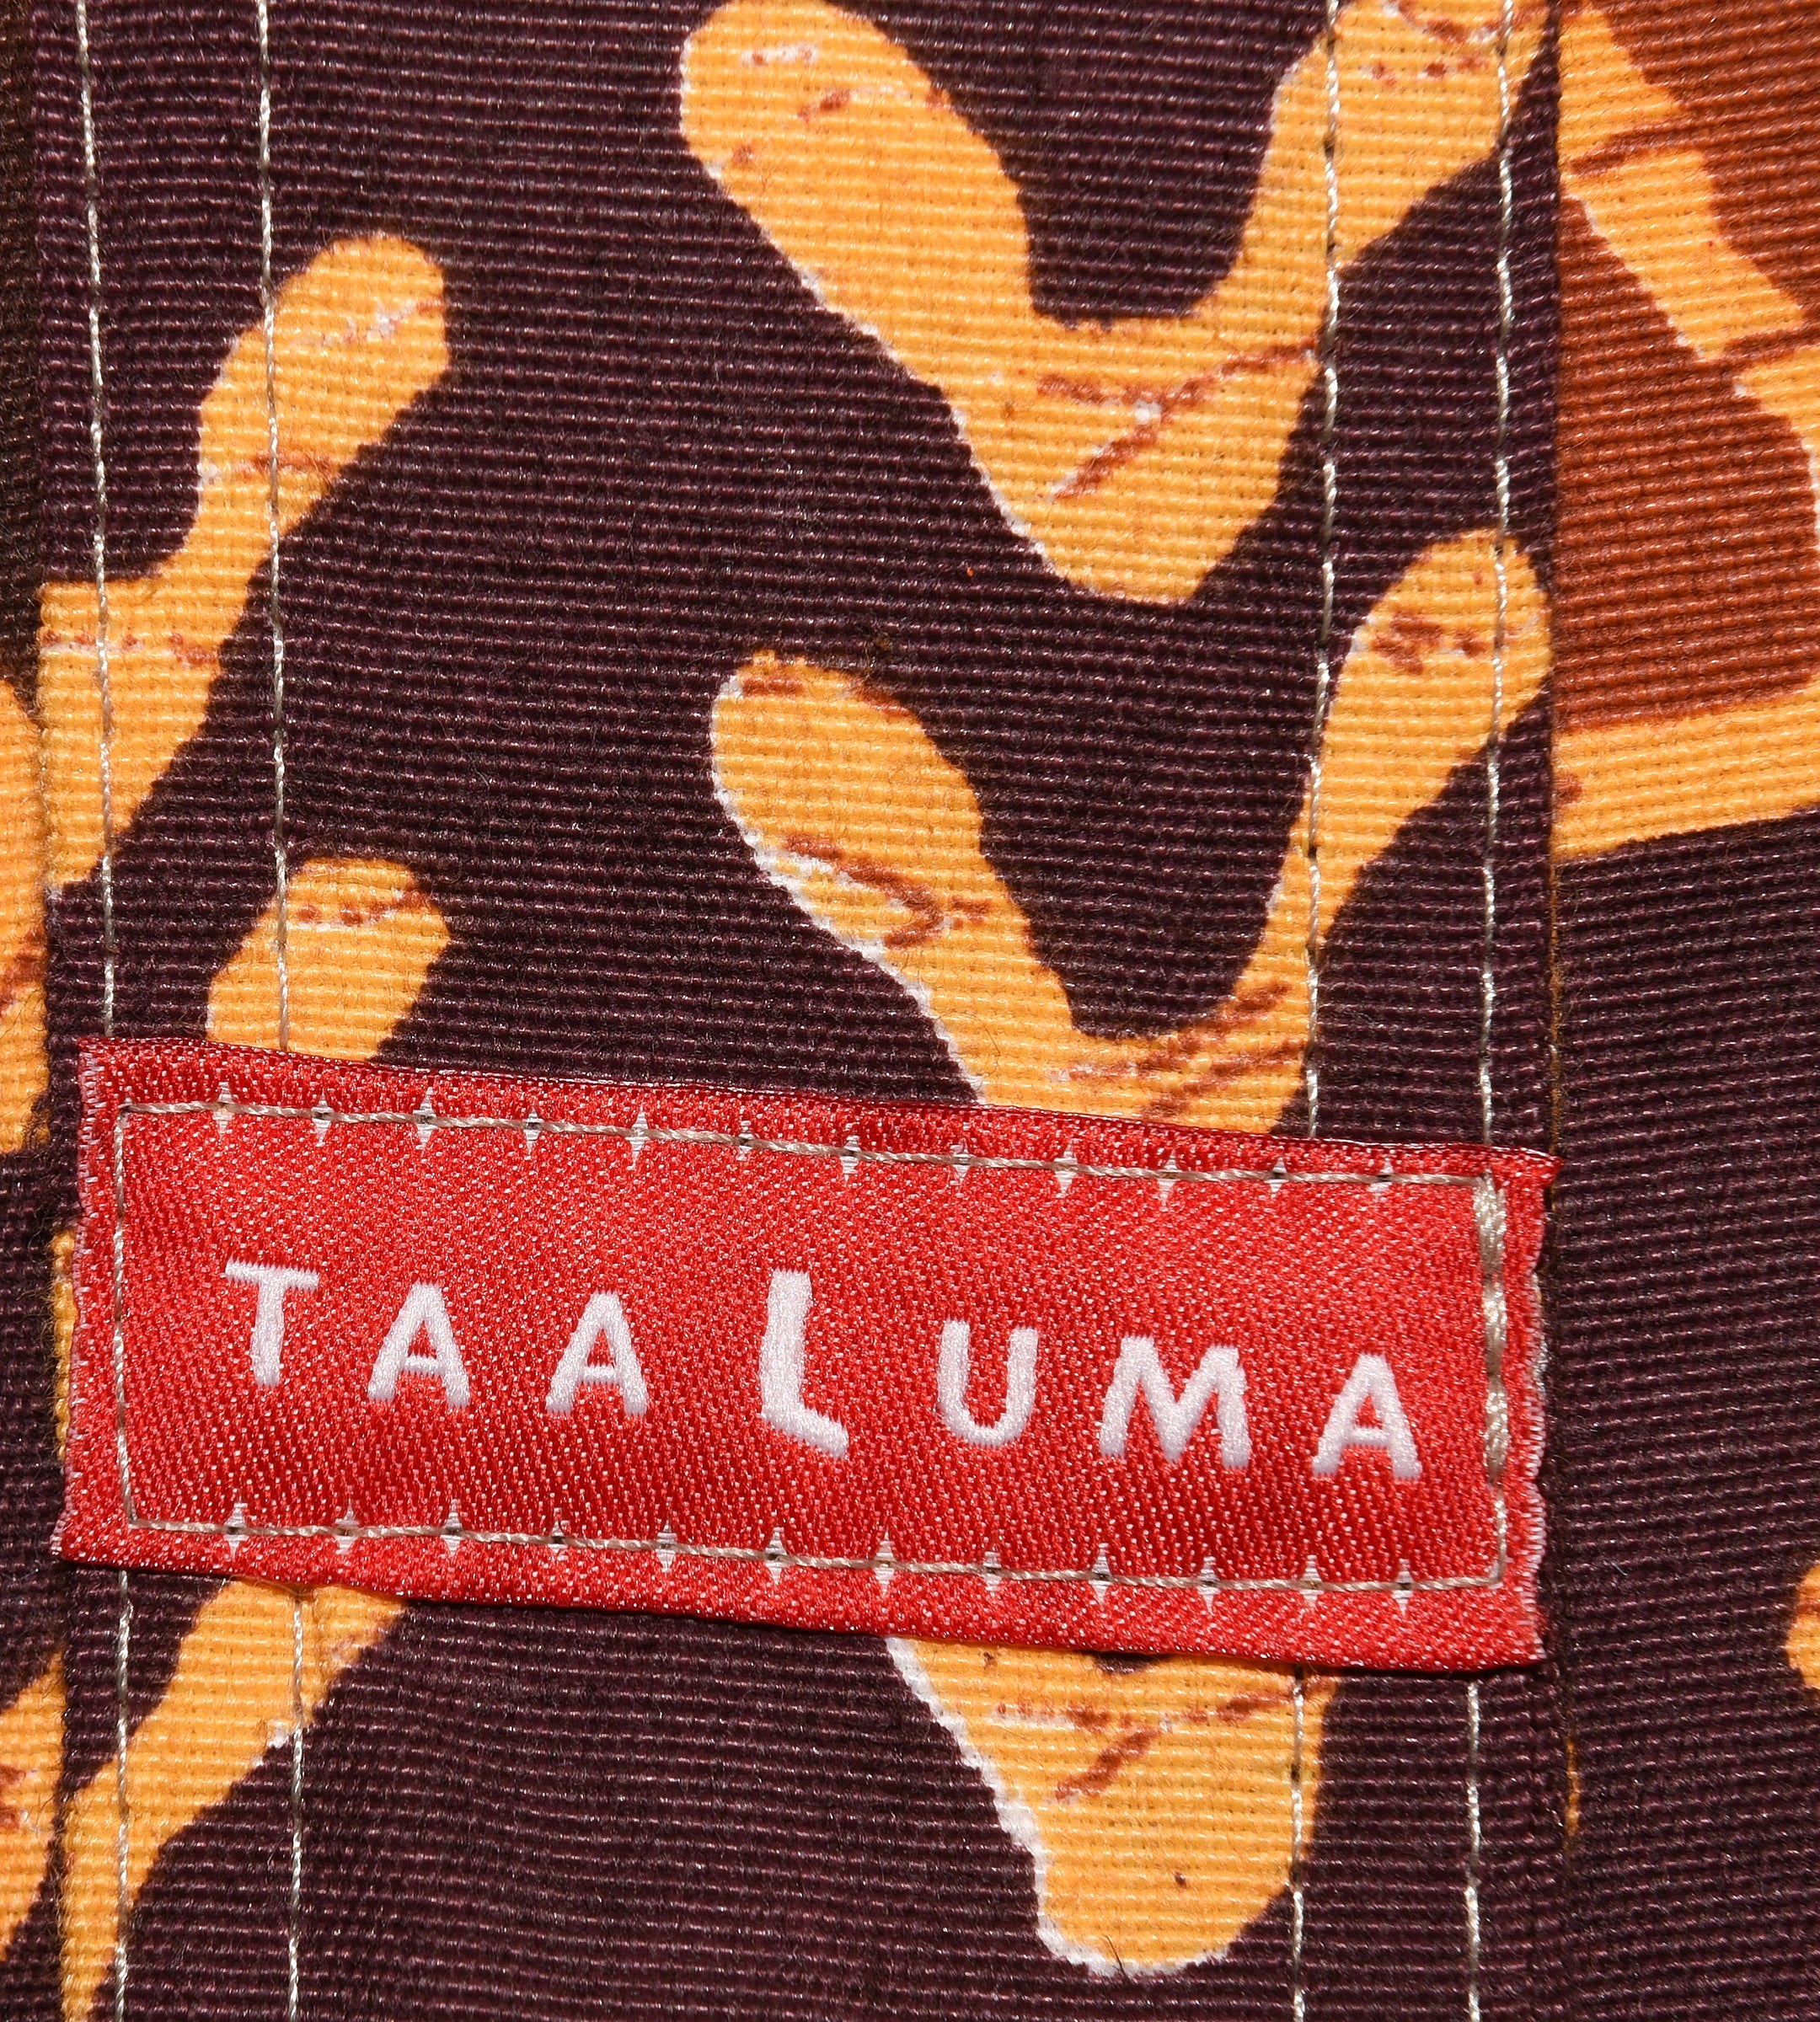 Tanzania Tote (by Priscilla Thilmony)